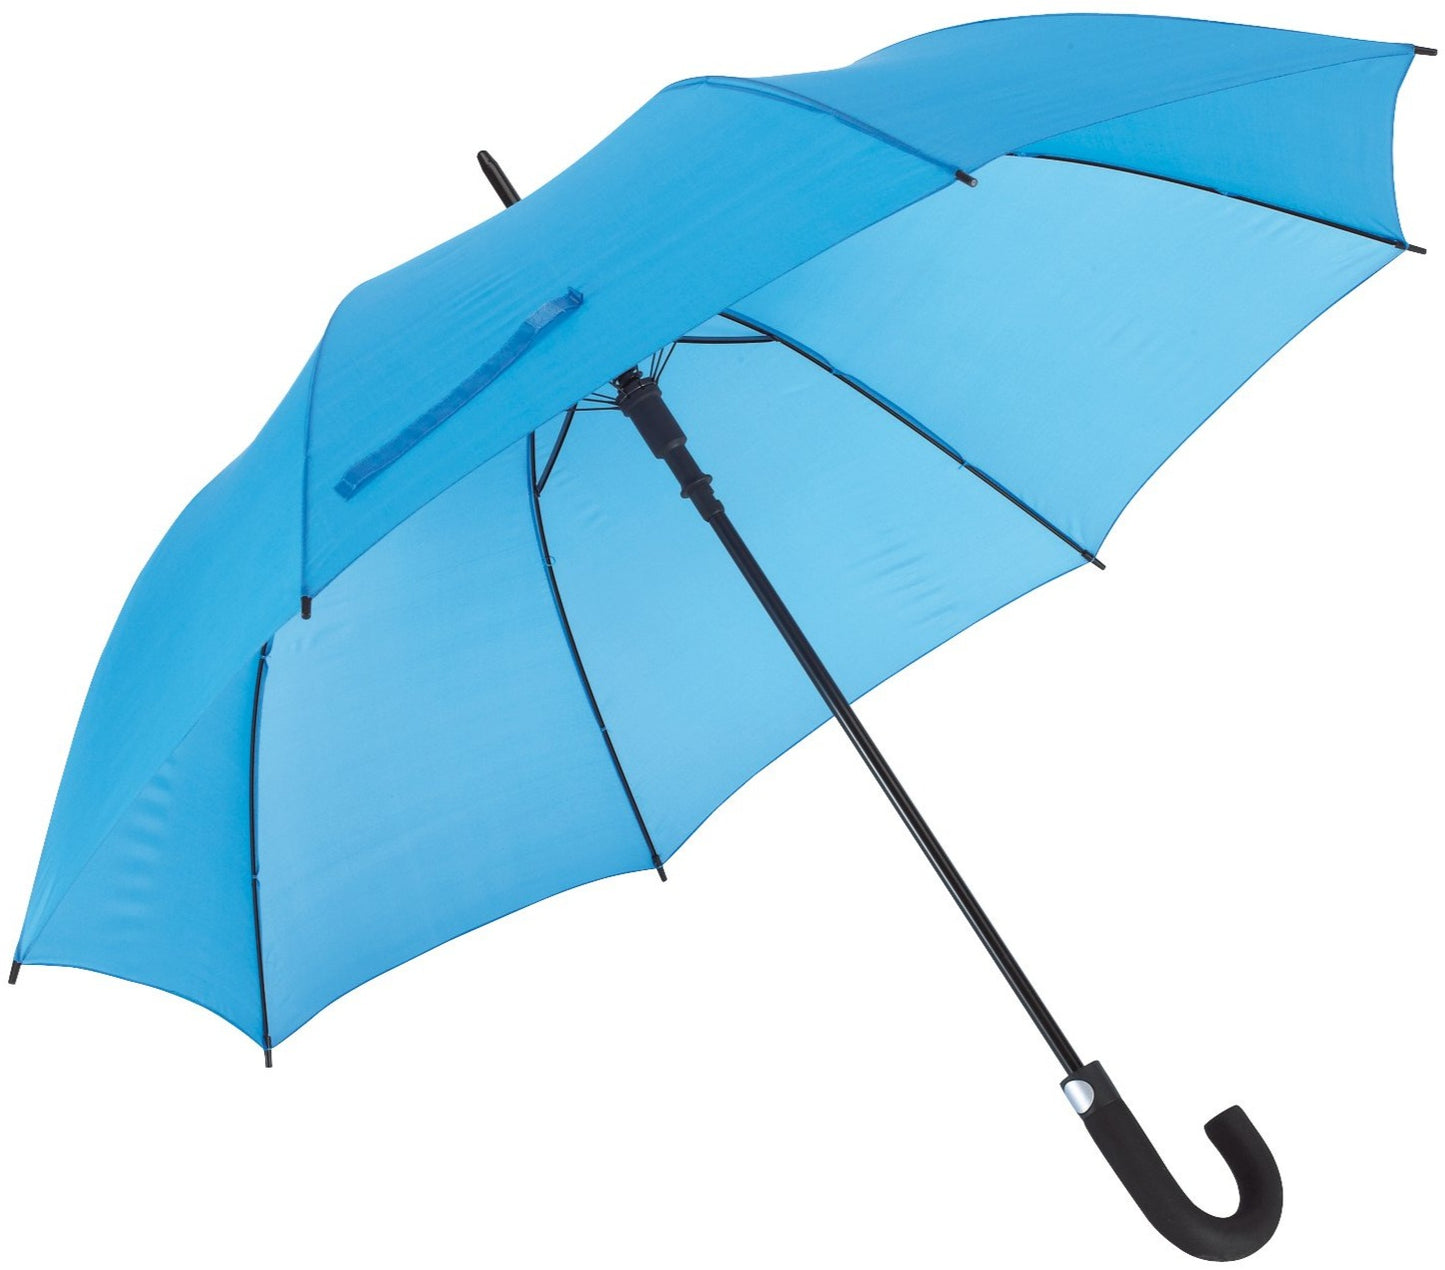 Γαλάζια ομπρέλα συνοδείας μεγάλων διαστάσεων, αυτόματη, με κλασική κυρτή λαβή.